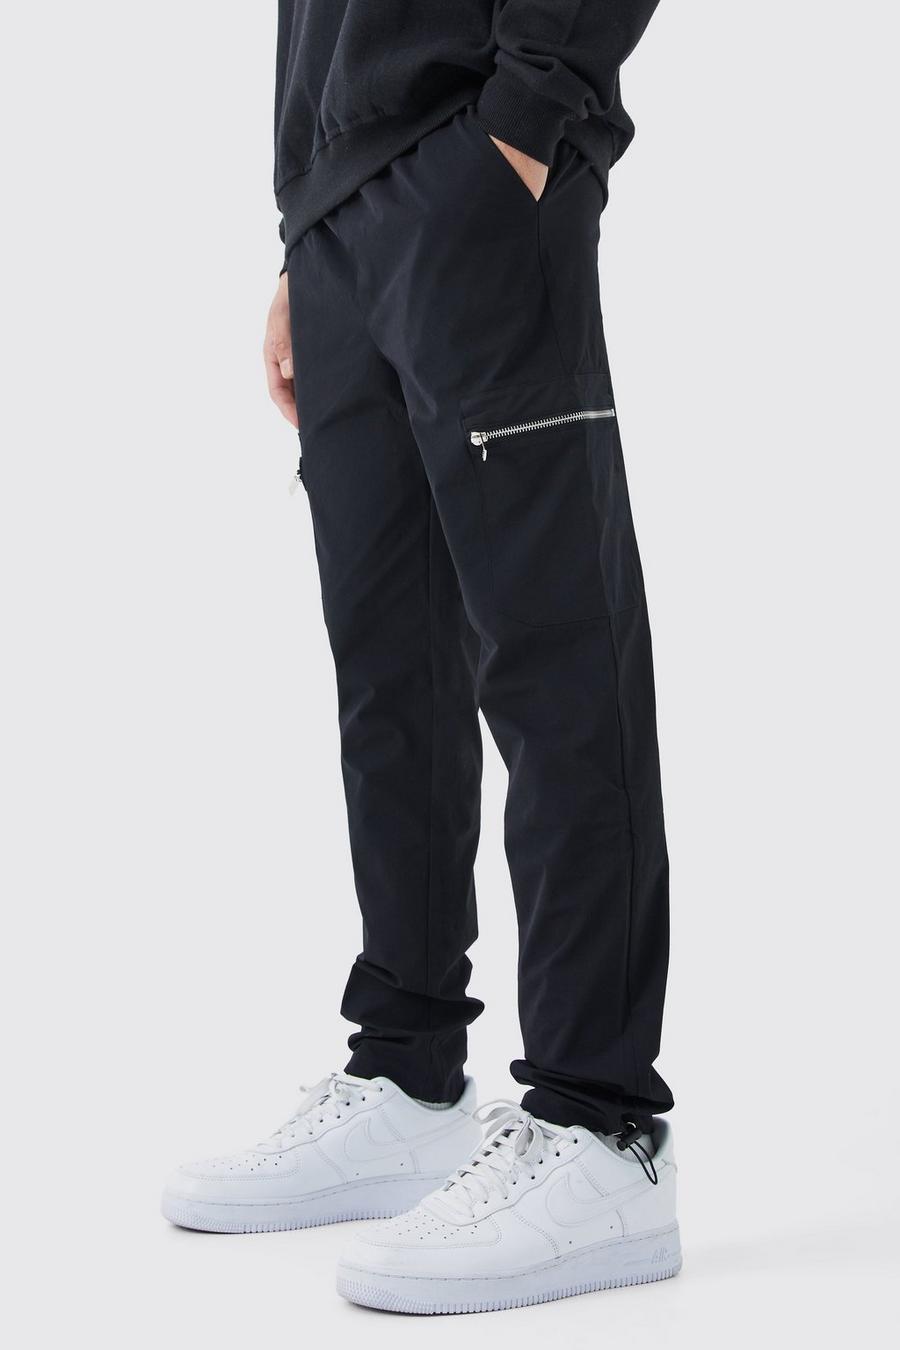 Pantalón cargo ajustado elástico técnico con cintura elástica, Black